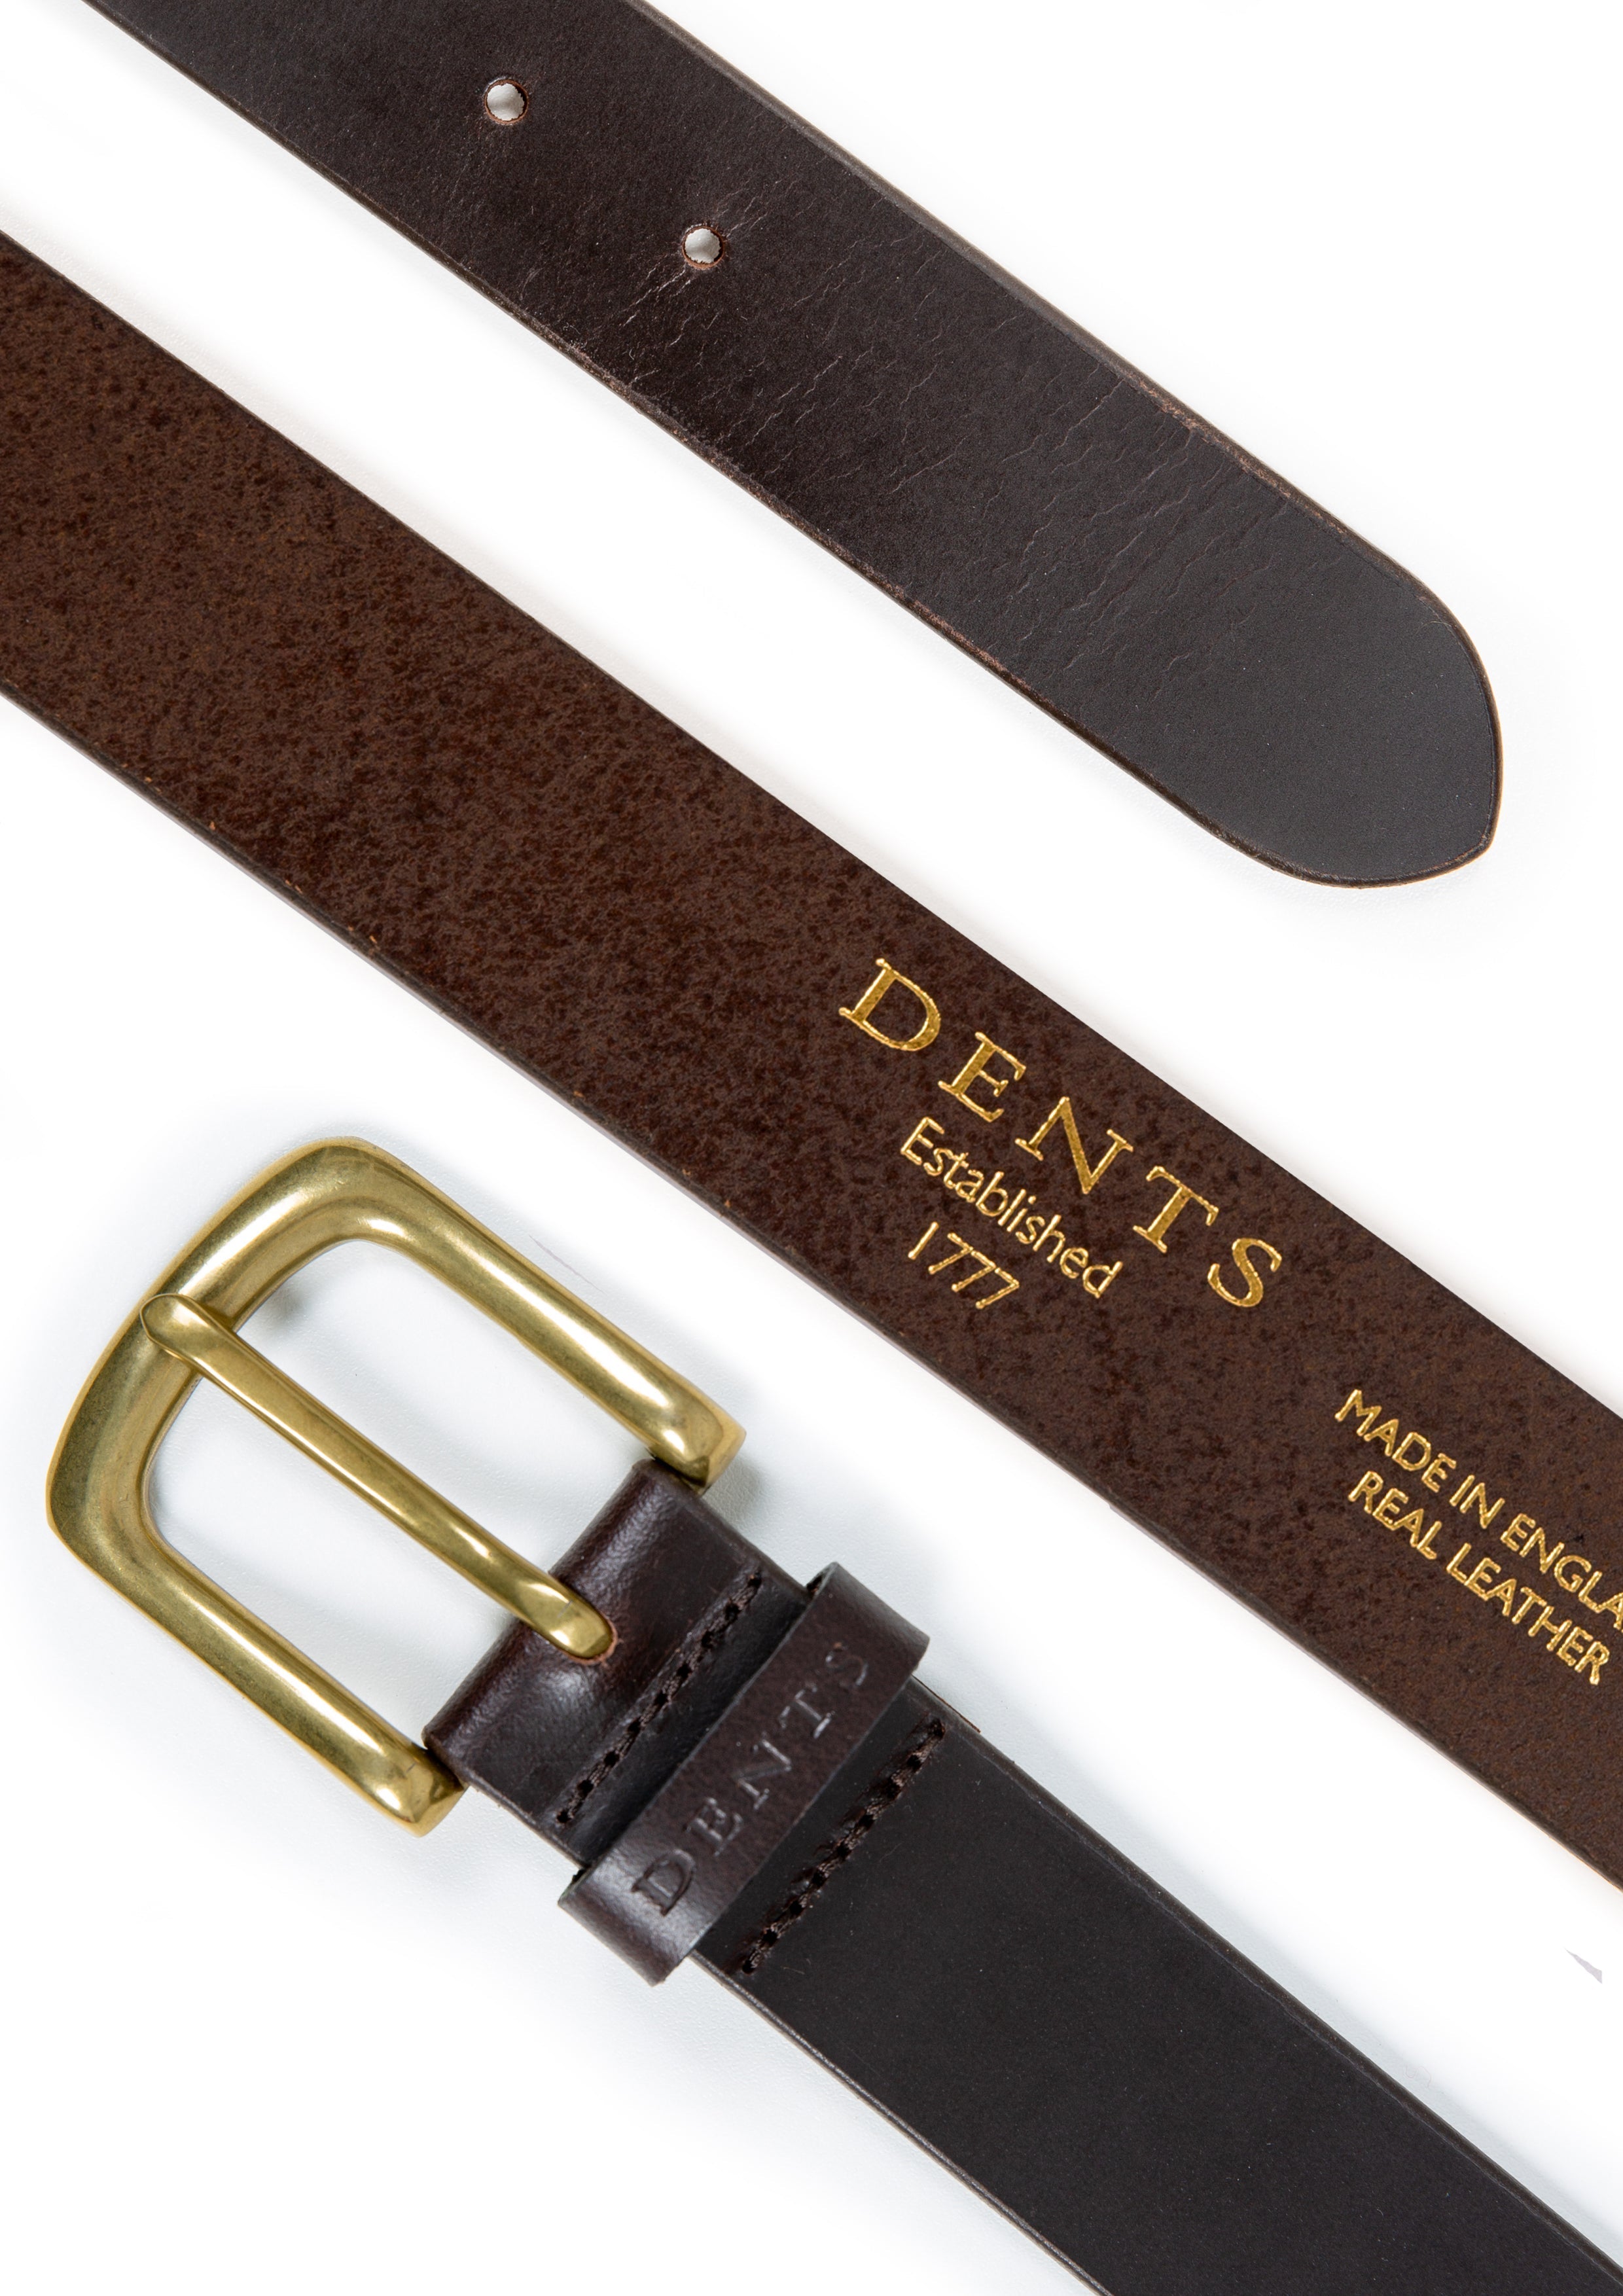  Men's Genuine Leather Belt, Full Grain Belt